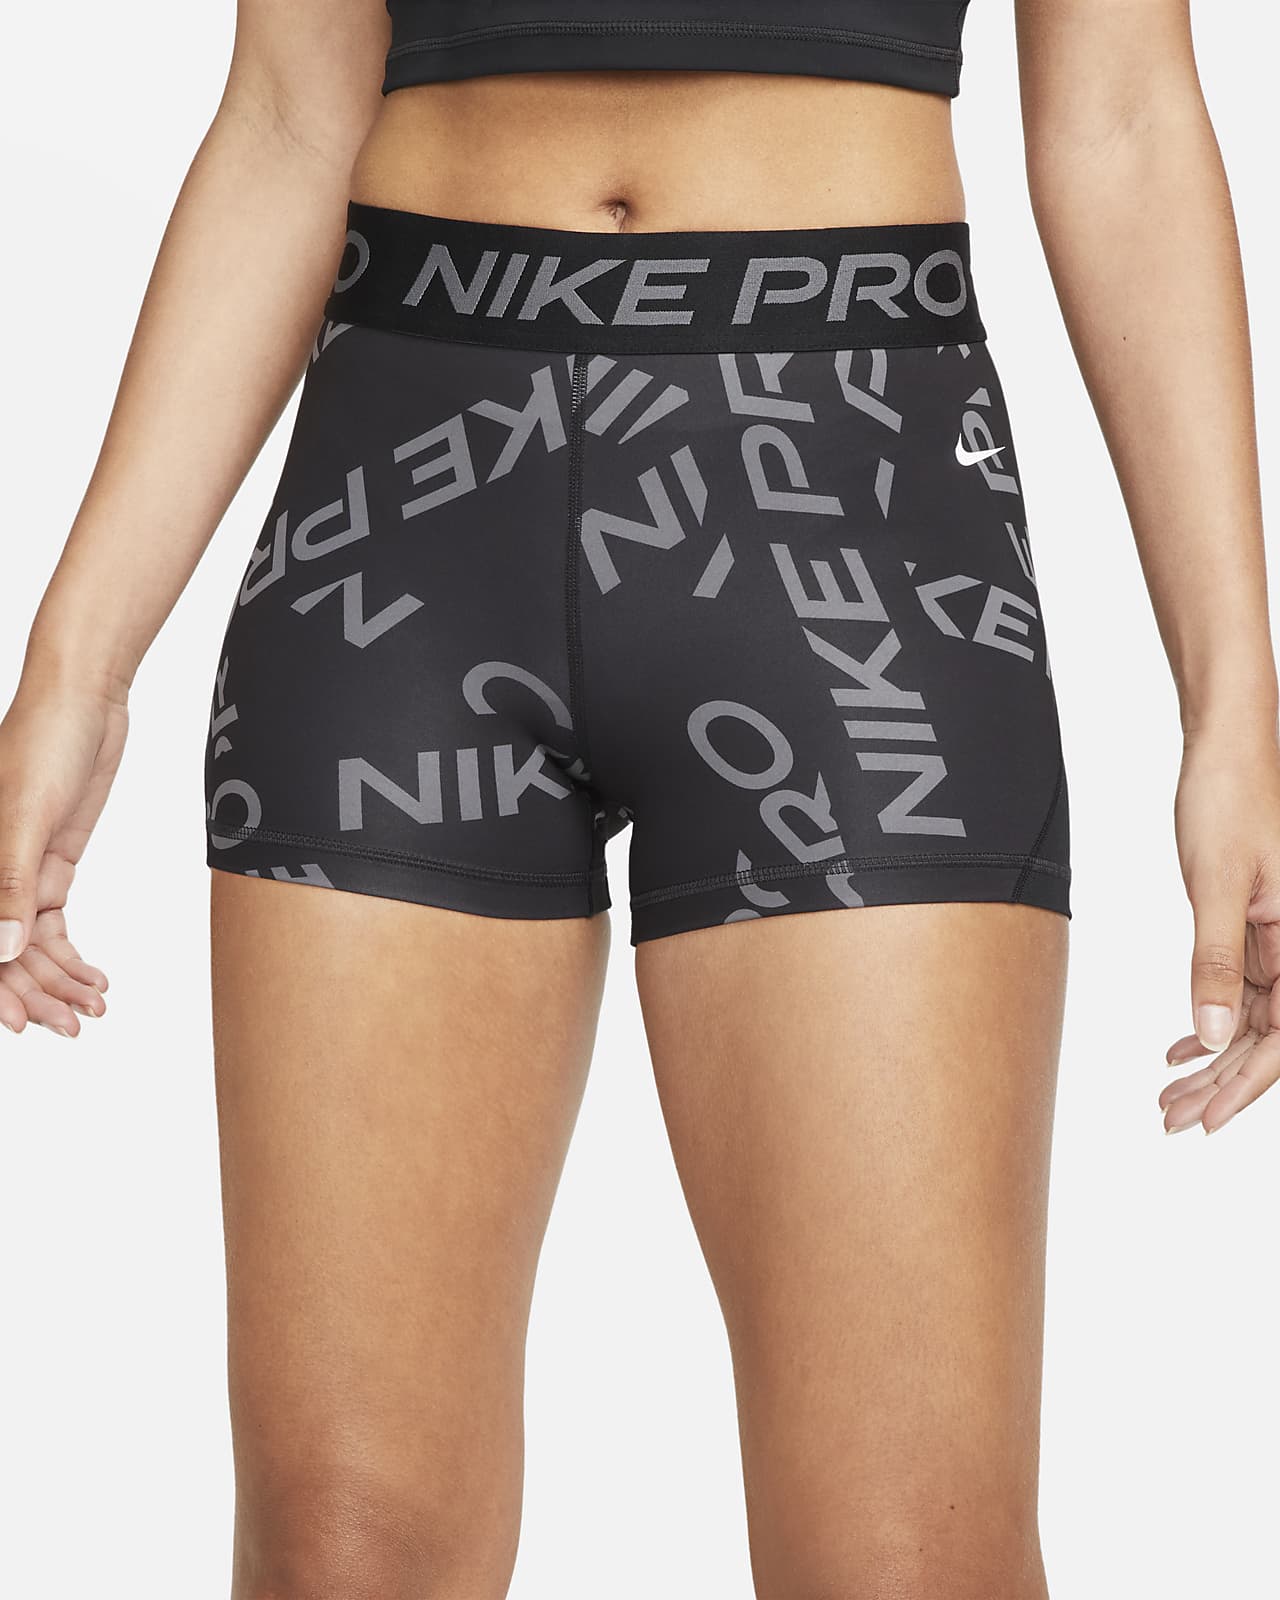 Stylish Nike Pro Criss Cross Shorts